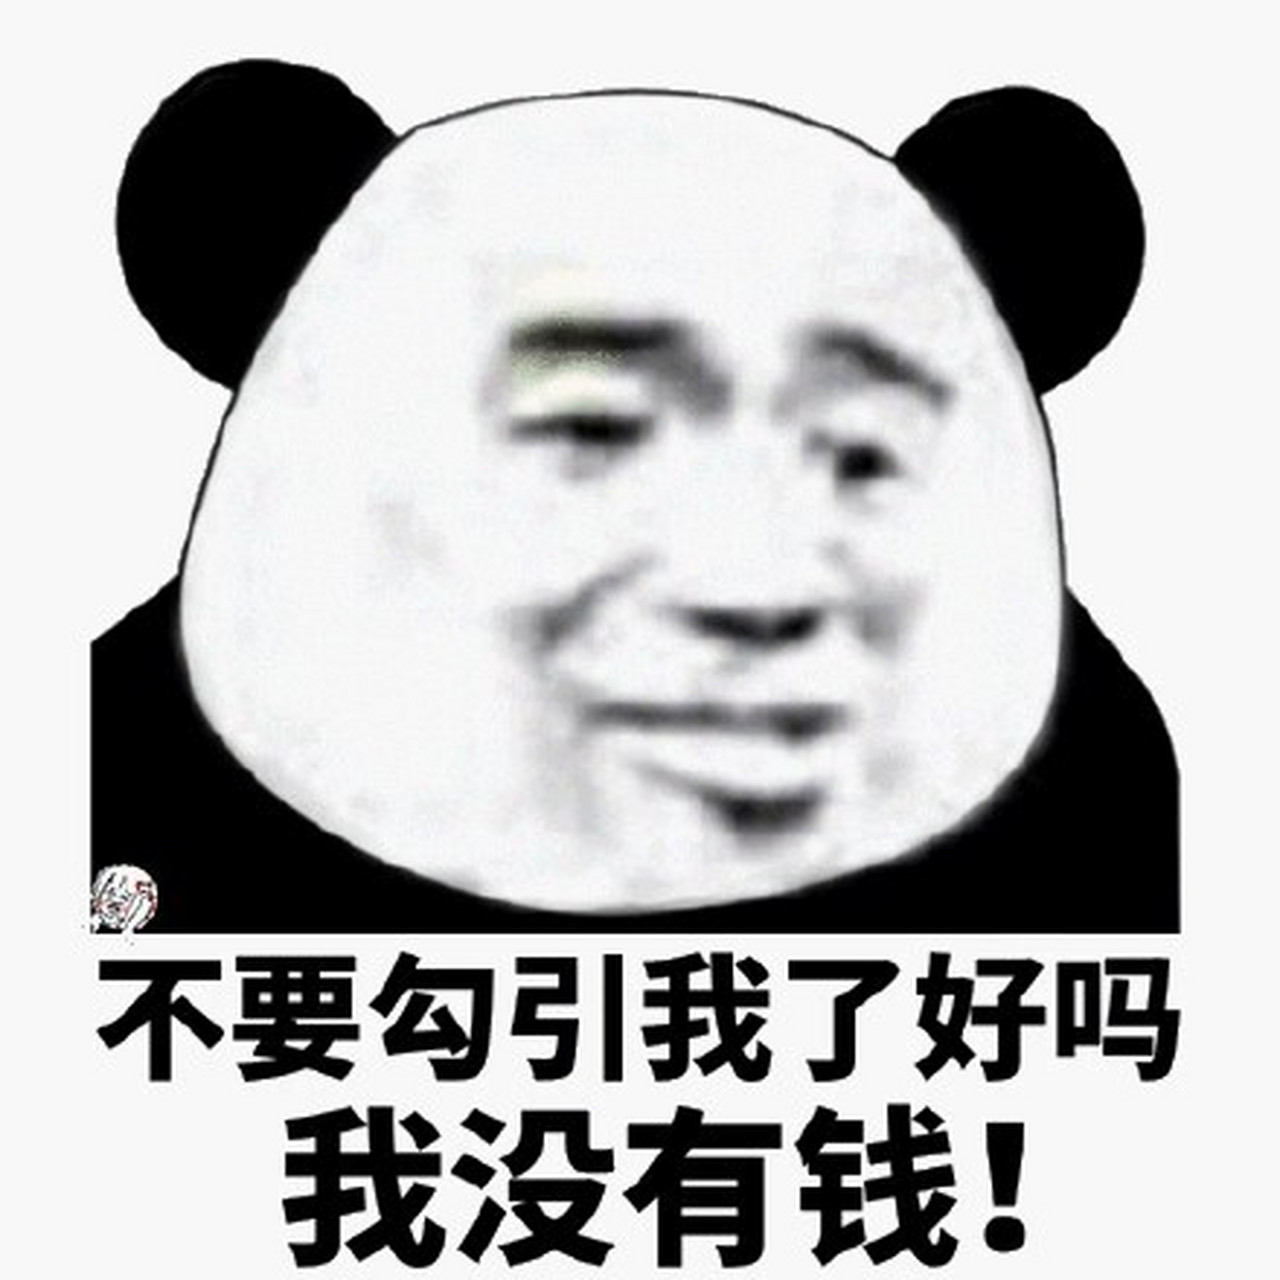 高清熊猫头搞笑图片